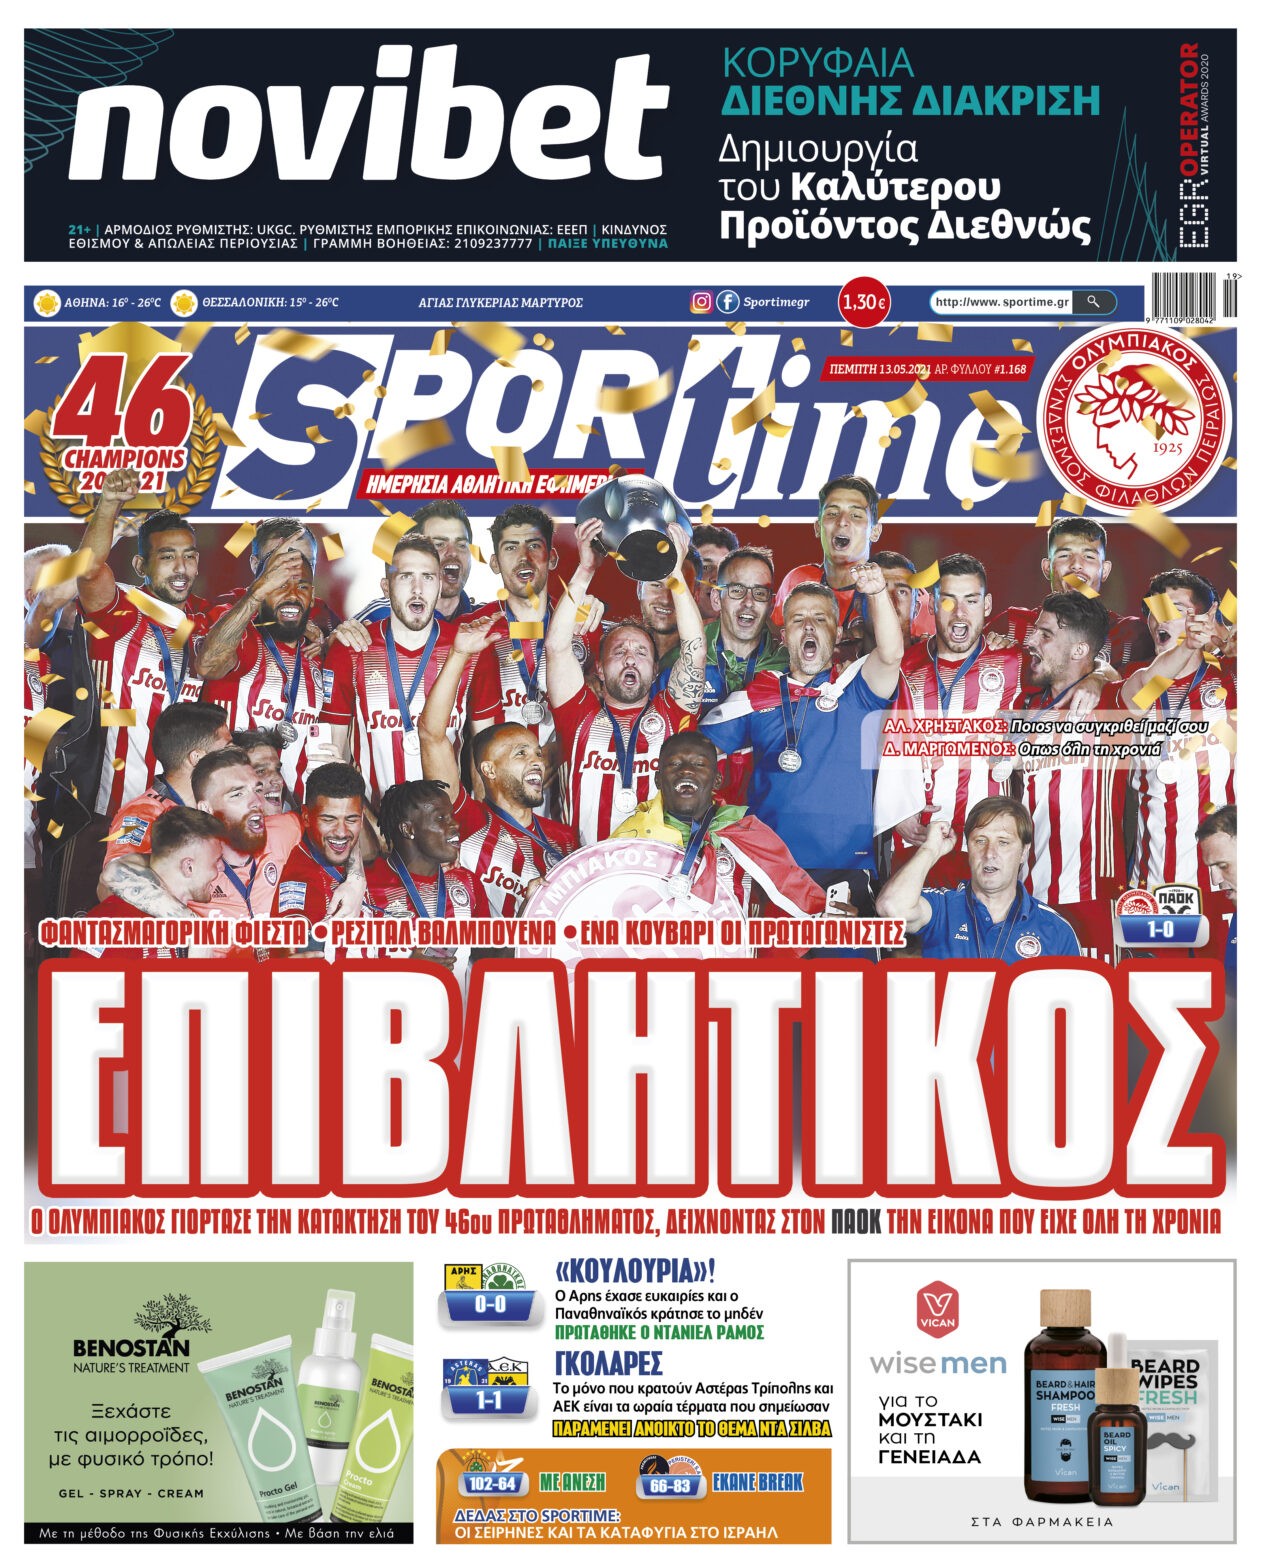 Sportime-Έντυπη έκδοση: Ο Ολυμπιακός γιόρτασε όπως του άξιζε την κατάκτηση του πρωταθλήματος, ενώ στον Παναθηναϊκό προτάθηκε ο Ράμος και η ΑΕΚ κρατάει ανοικτό του Ντα Σίλβα.